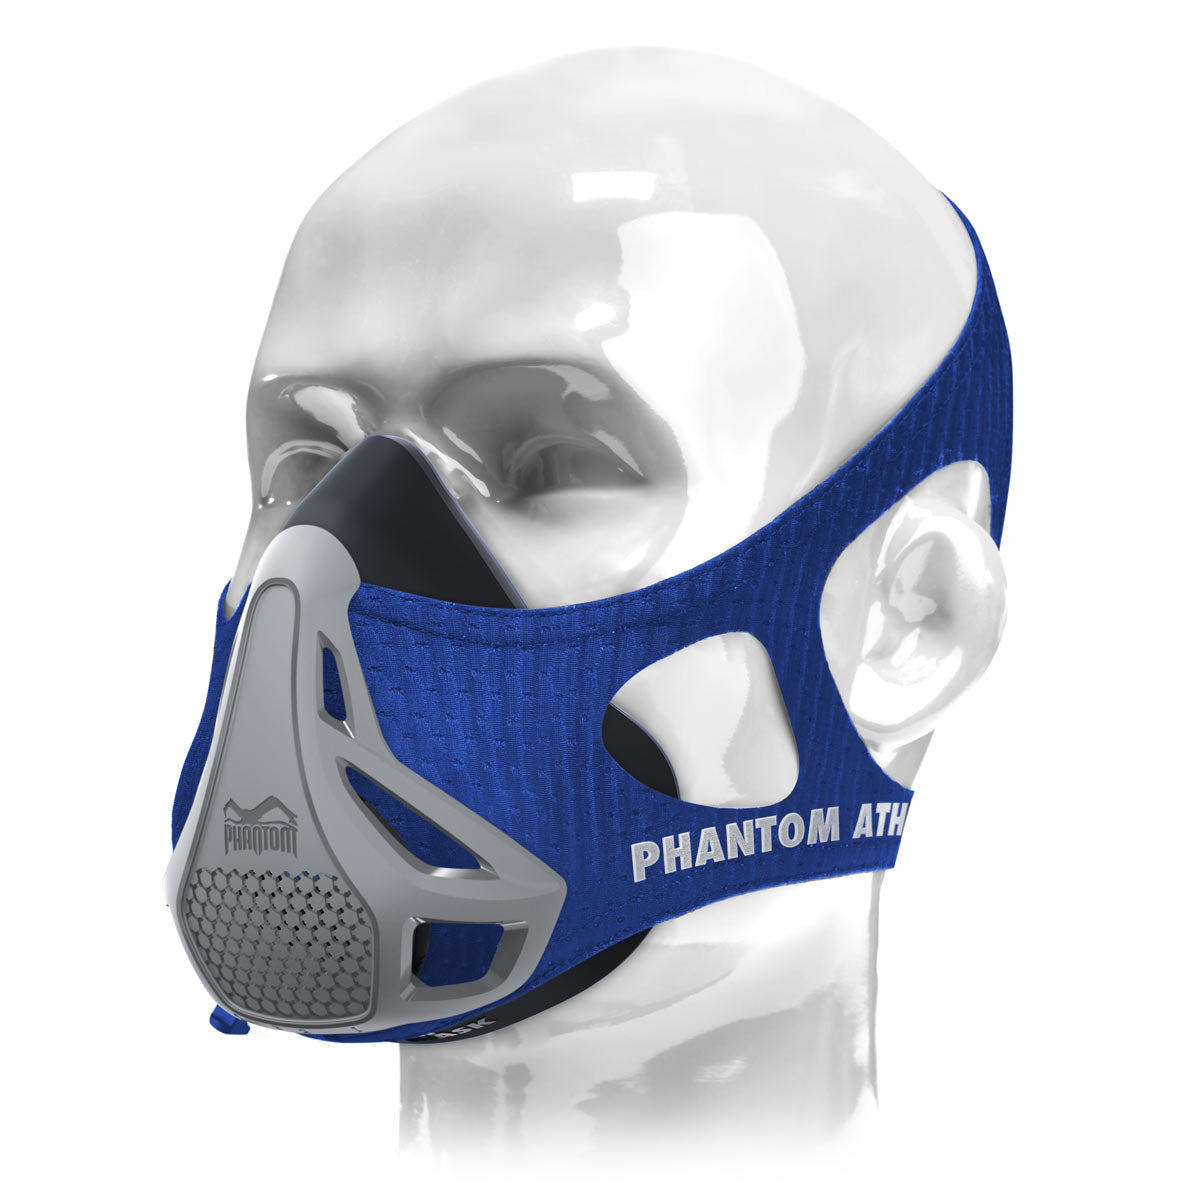 Tréningová maska Phantom v tajomnej verzii. Nechajte sa prekvapiť farbou. Ideálne tréningové zariadenie, ktoré posunie vašu kondíciu na vyššiu úroveň.